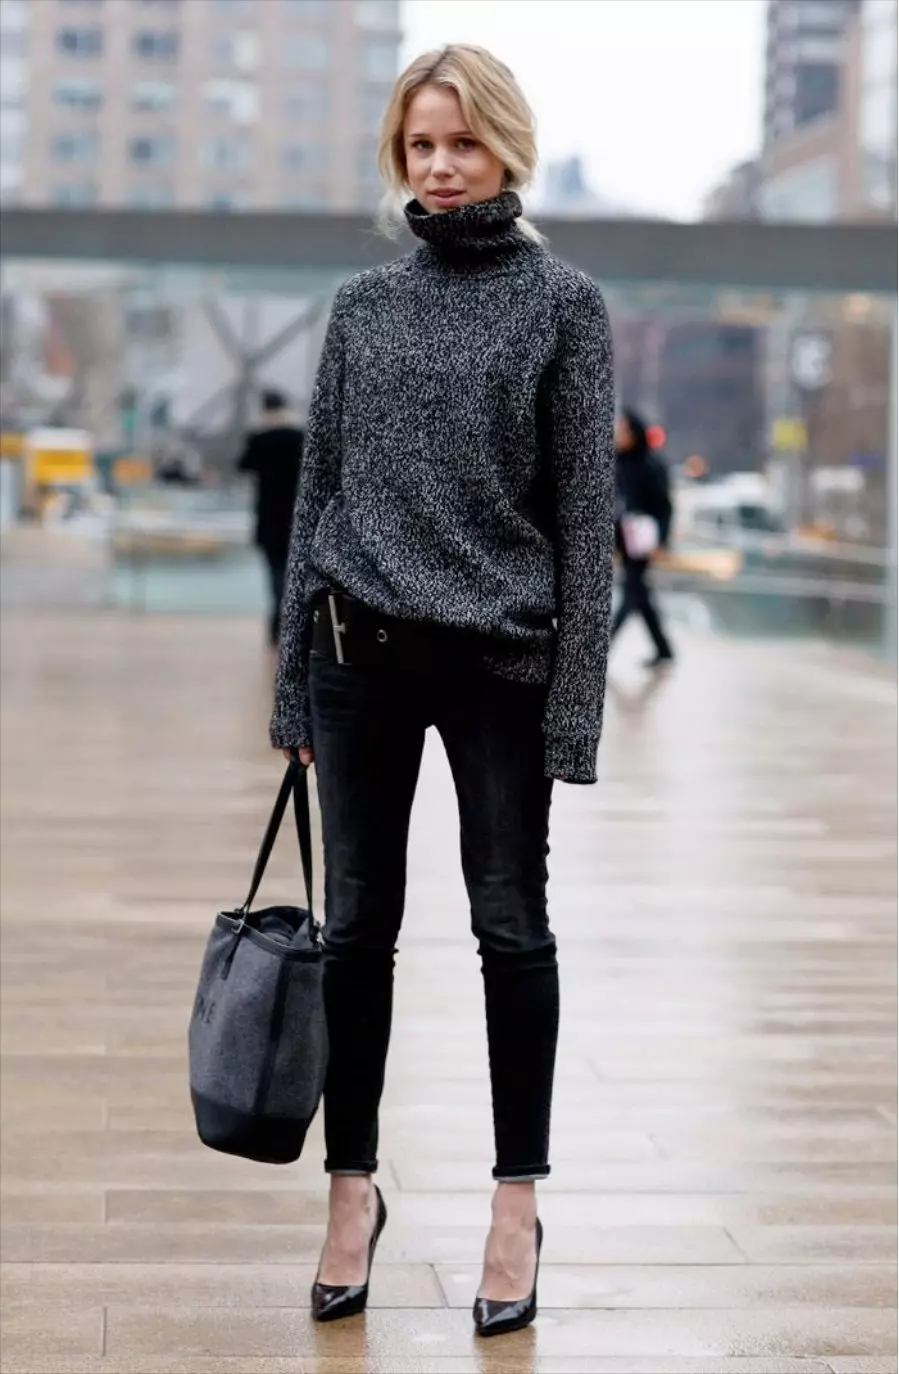 Áo len nữ (192 ảnh): áo len thời trang 2021, trắng, đen, dài, với cổ họng, cashmere, ấm, dệt kim, với bím tóc 1052_142